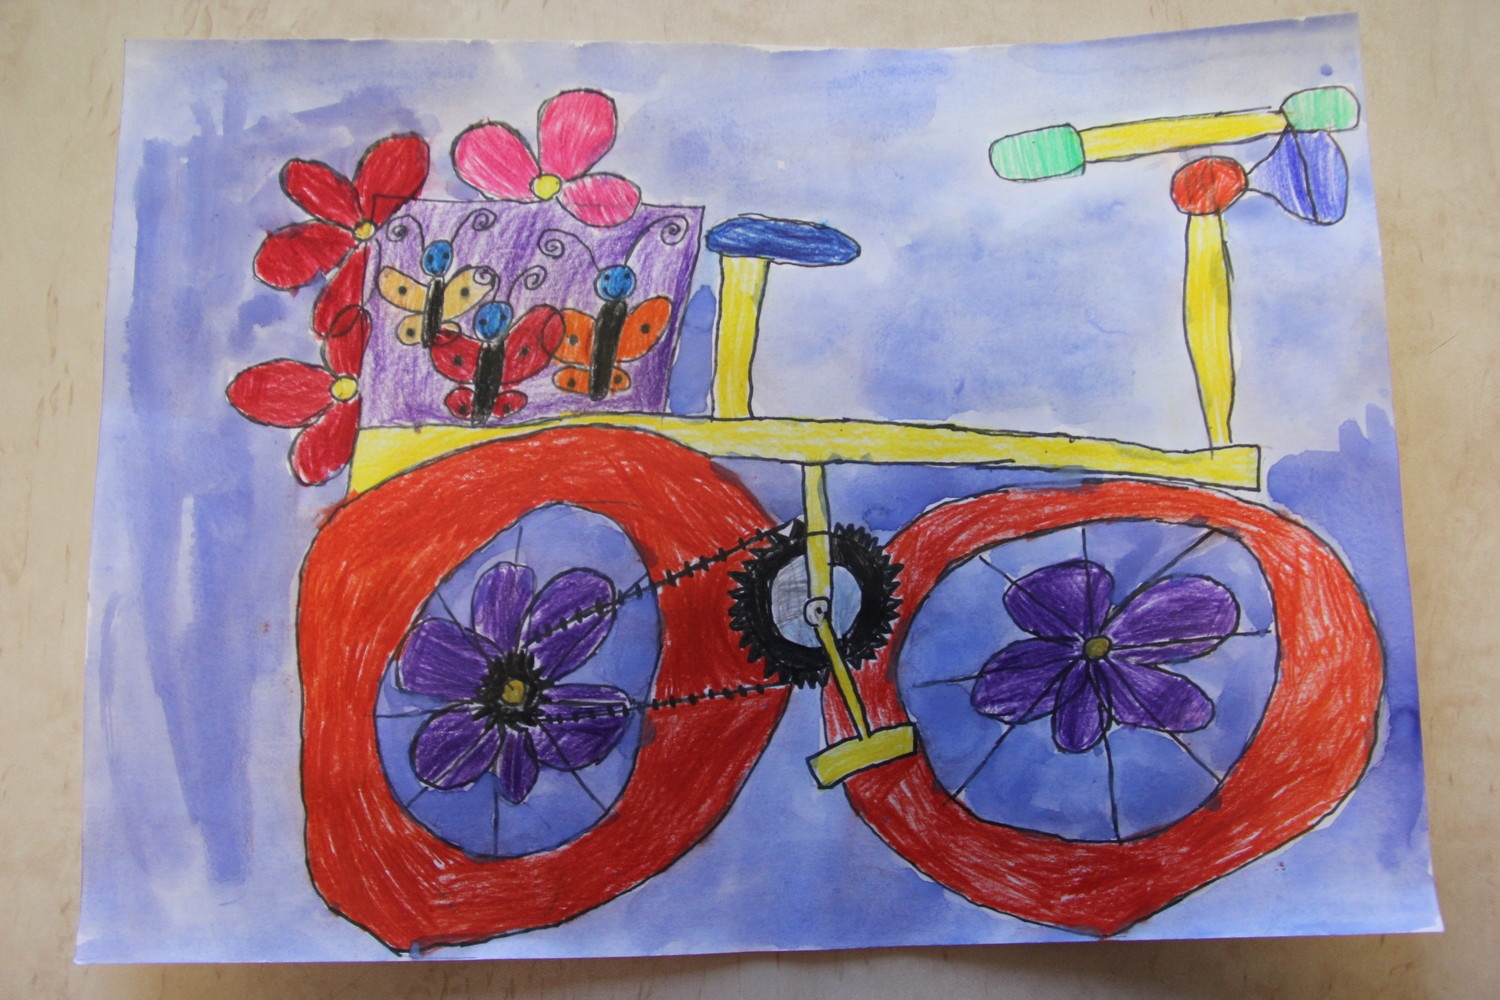 Bērnu zīmējumu konkursa “Sapņu velosipēds zaļākai pasaulei” iesniegtie darbi